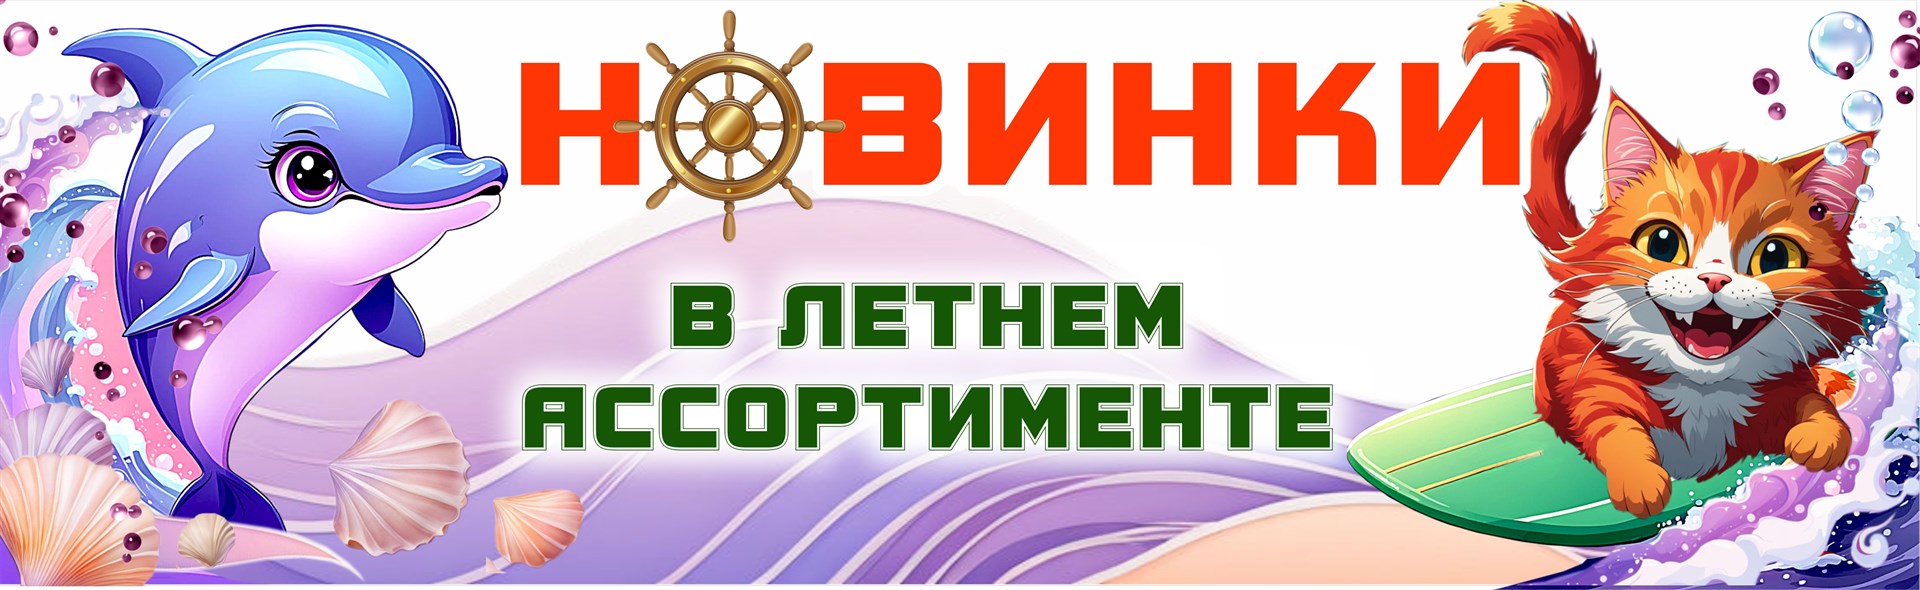 https://fabrikasuvenir.ru/categories/kacheli-formy-suvenirnykh-magnitov